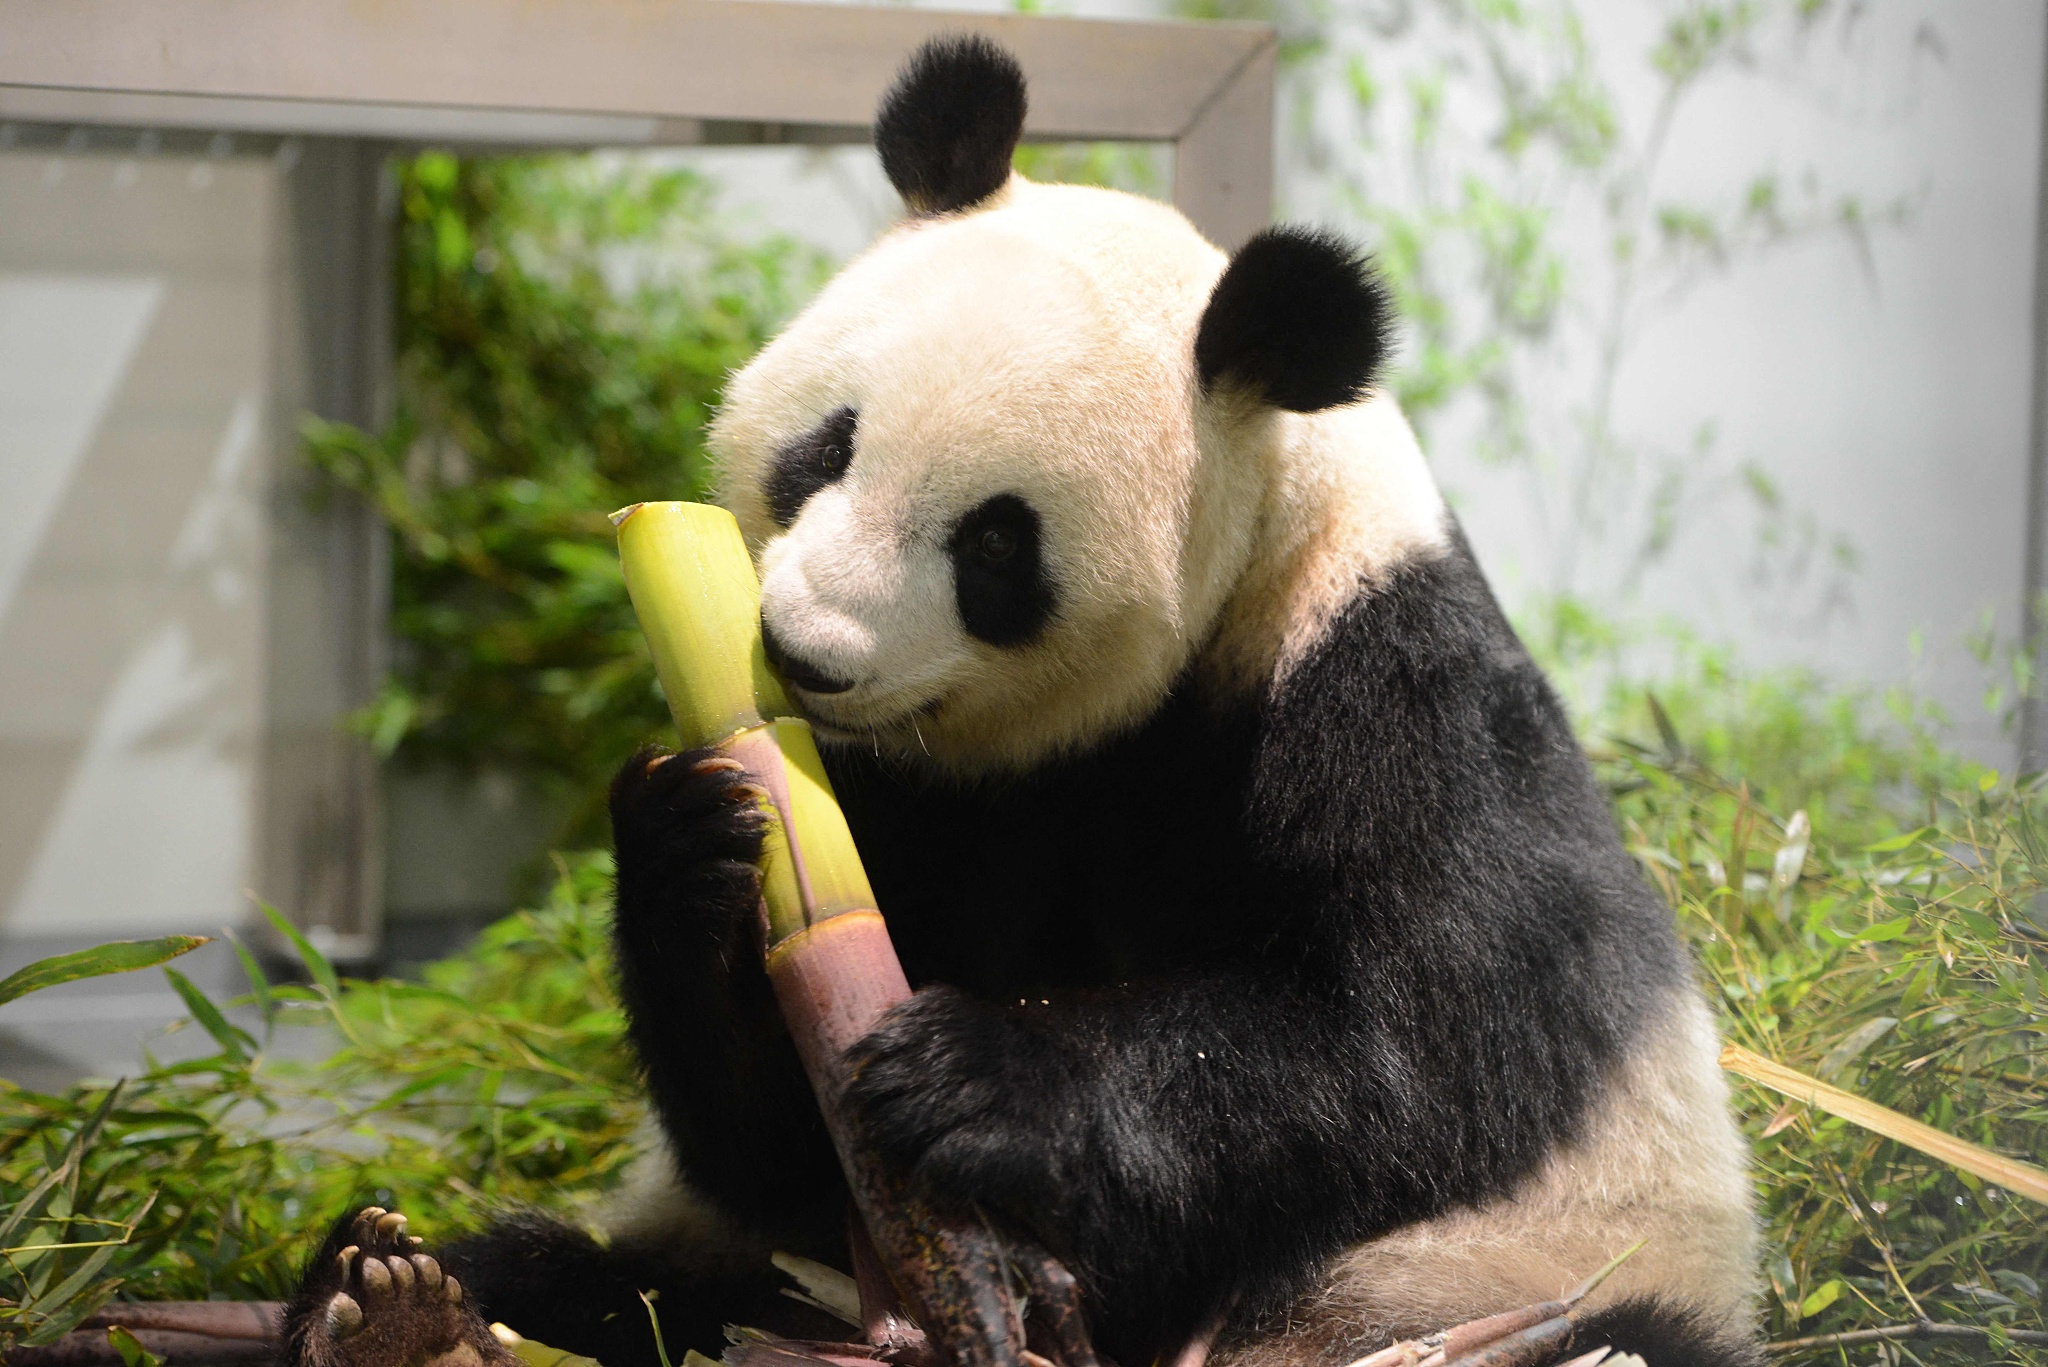 El oso panda es herbívoro